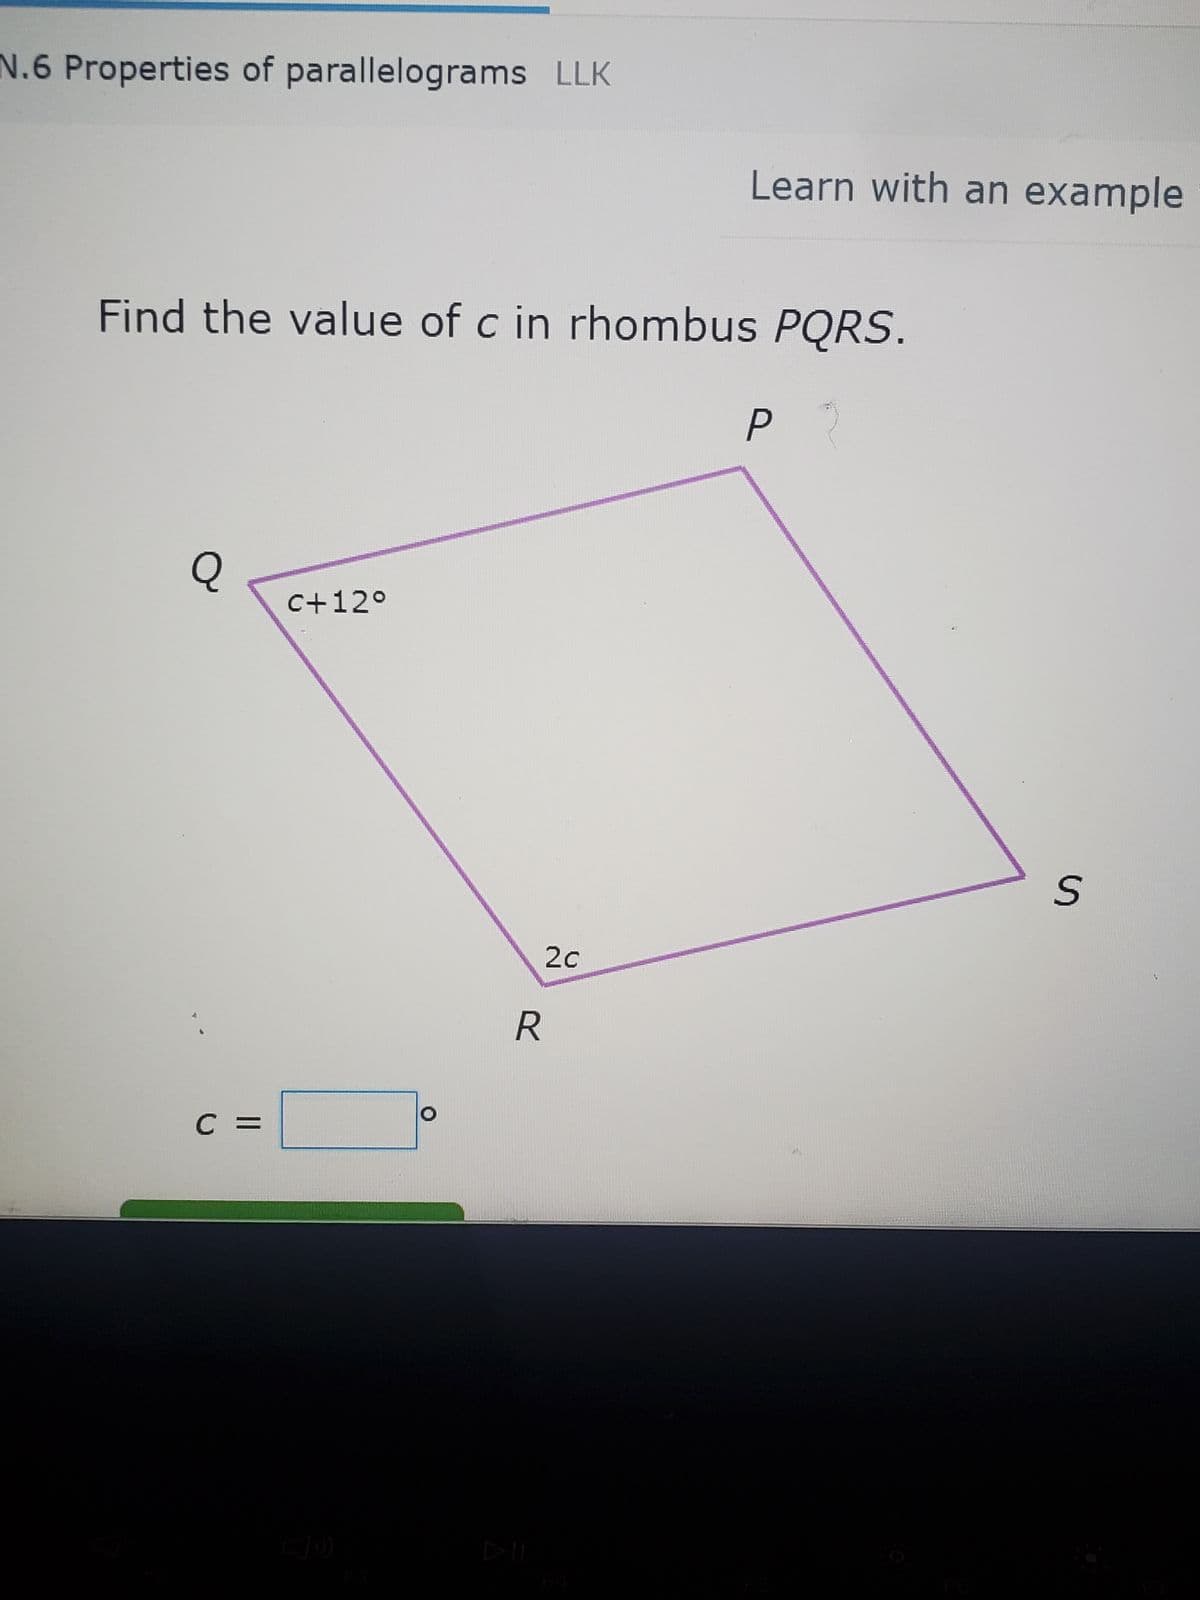 N.6 Properties of parallelograms LLK
Find the value of c in rhombus PQRS.
P2
Q
C =
c+12°
2c
Learn with an example
R
S